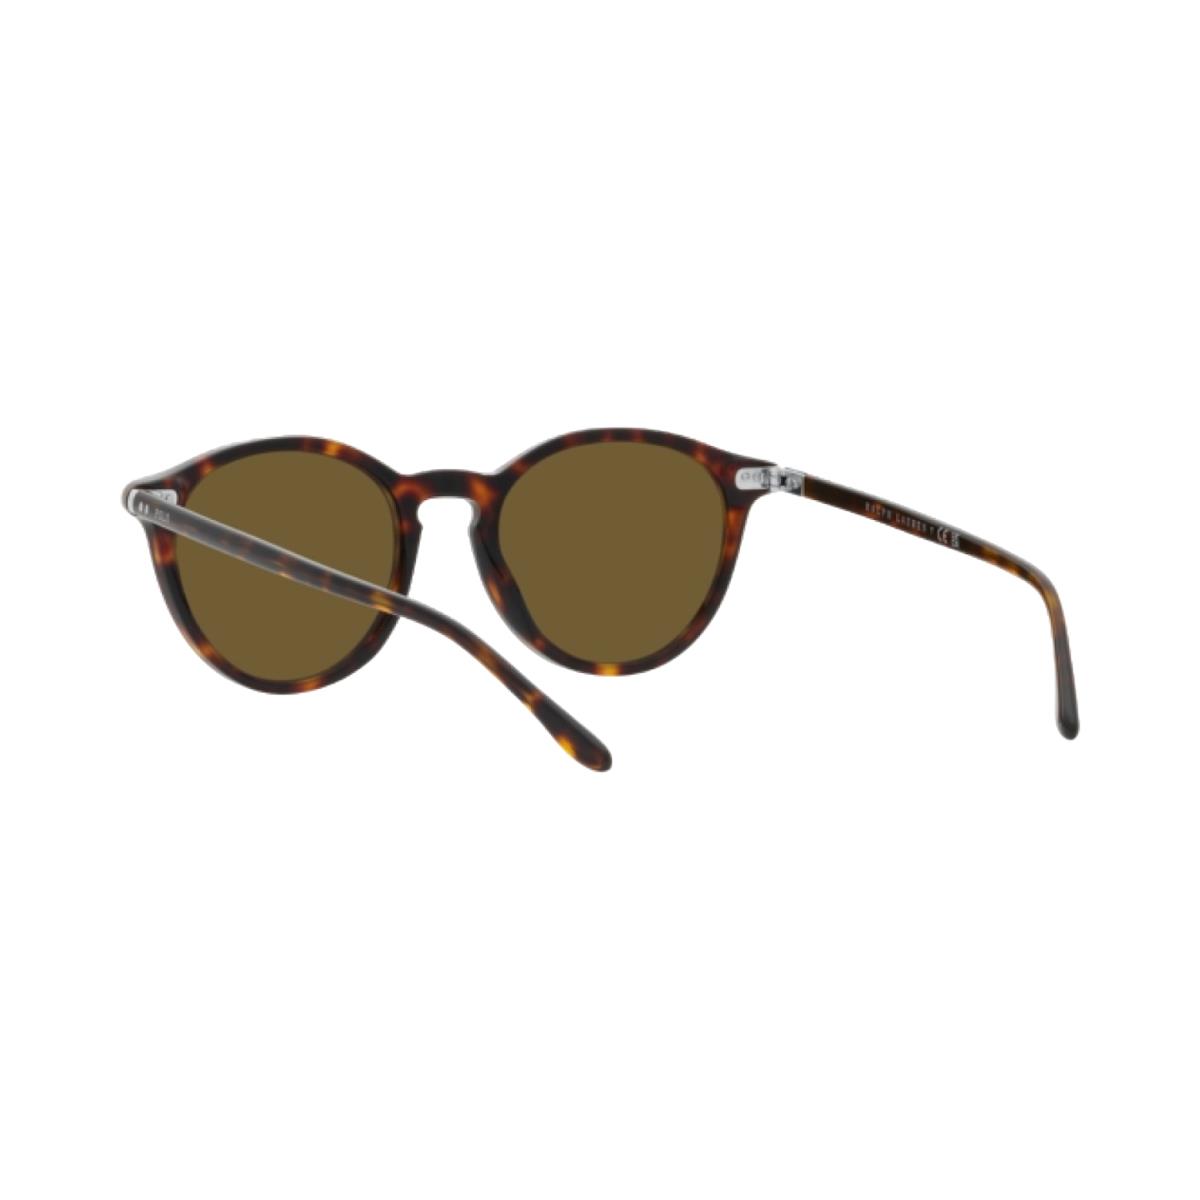 Ralph Lauren sunglasses  - Shiny Havana Frame, Olive Green Lens 2